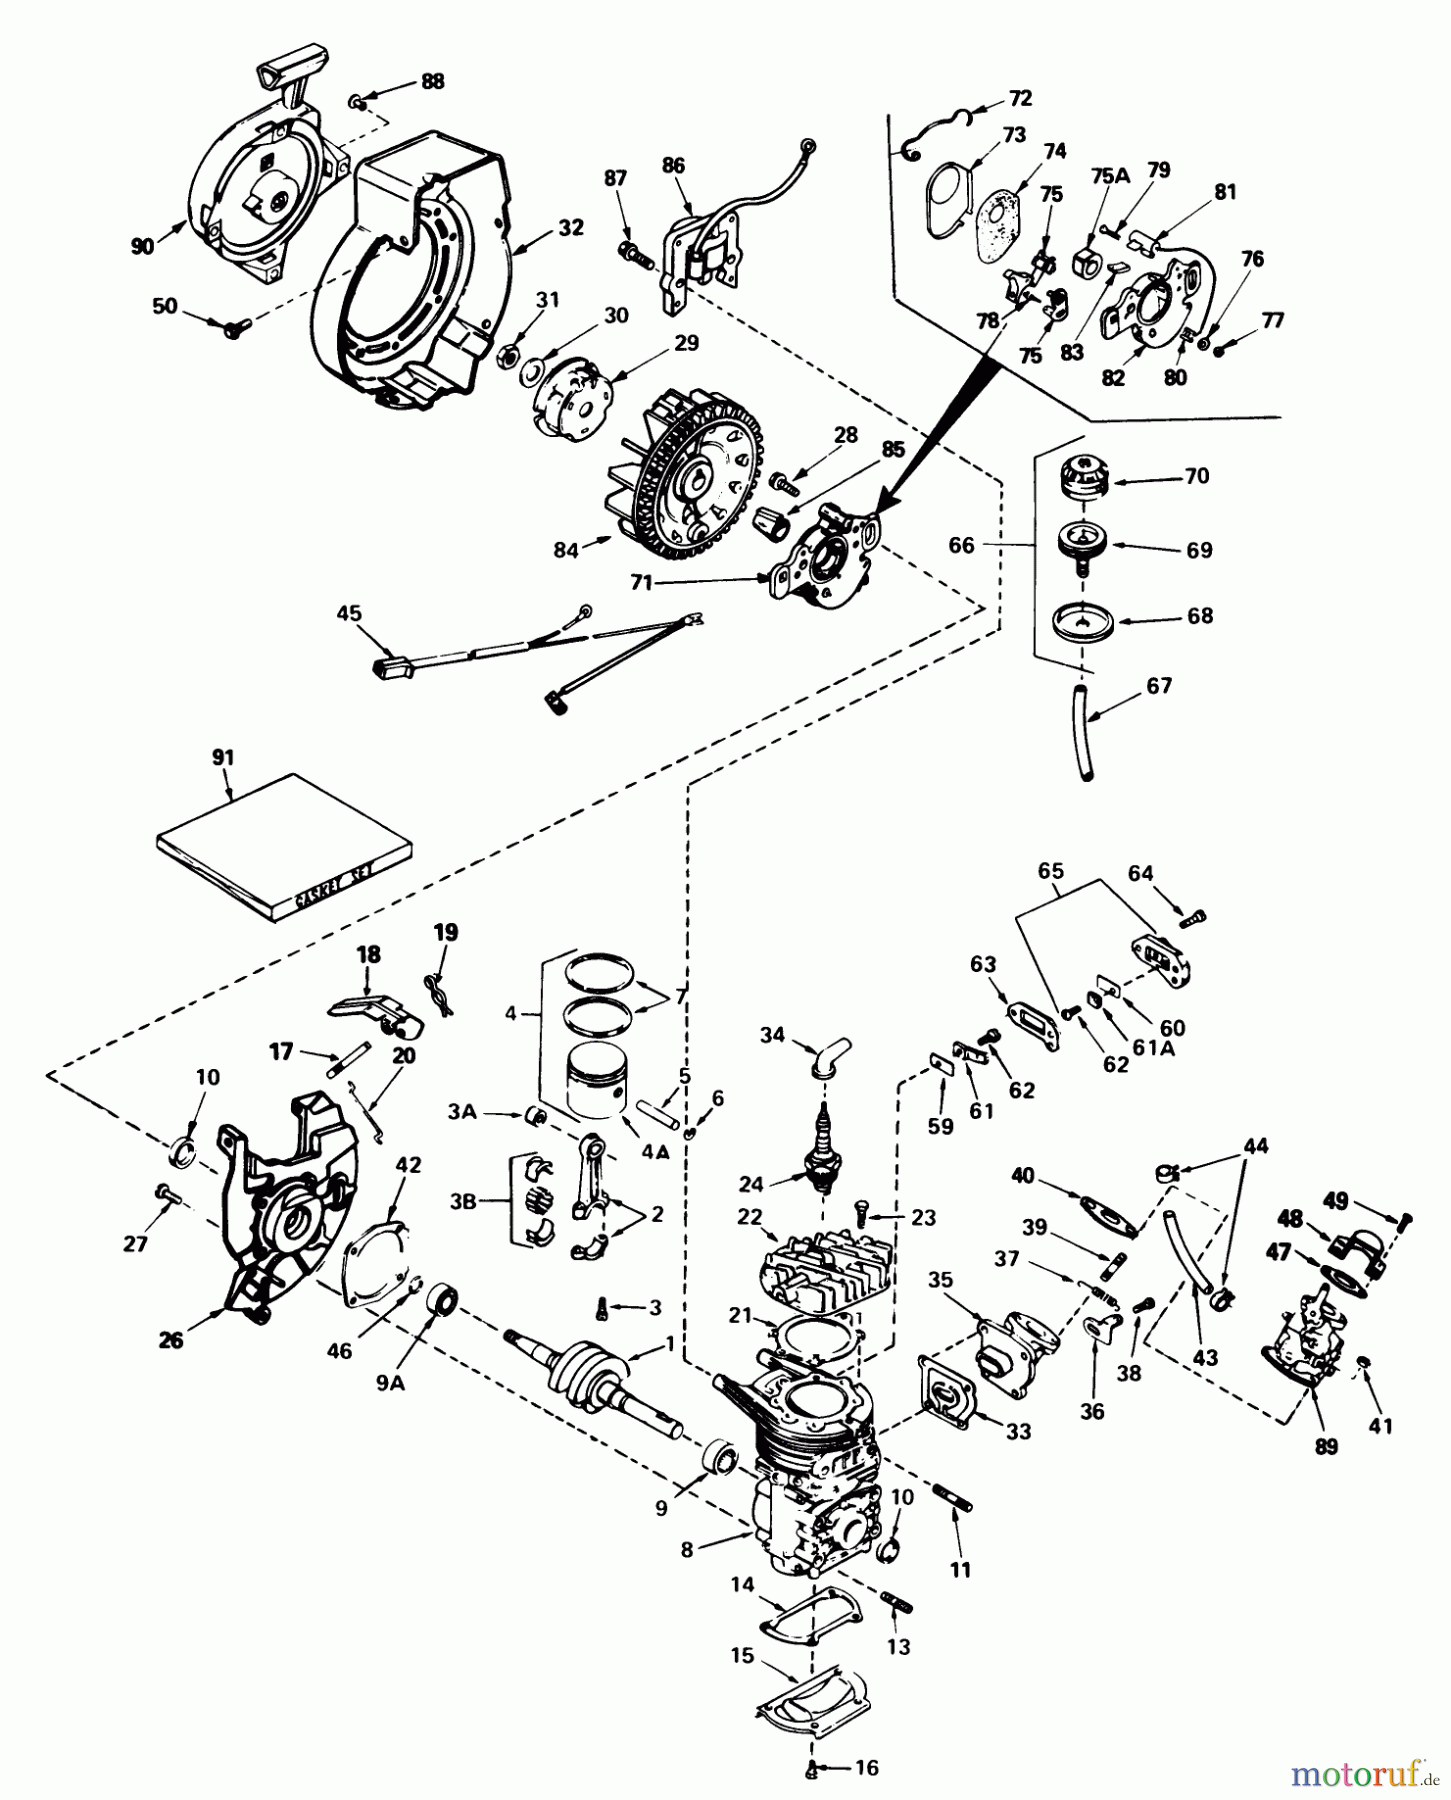  Toro Neu Snow Blowers/Snow Throwers Seite 1 38242 (S-200) - Toro S-200 Snowthrower, 1983 (3000001-3999999) ENGINE ASSEMBLY ENGINE TECUMSEH MODEL NO. AH520 TYPE 1602